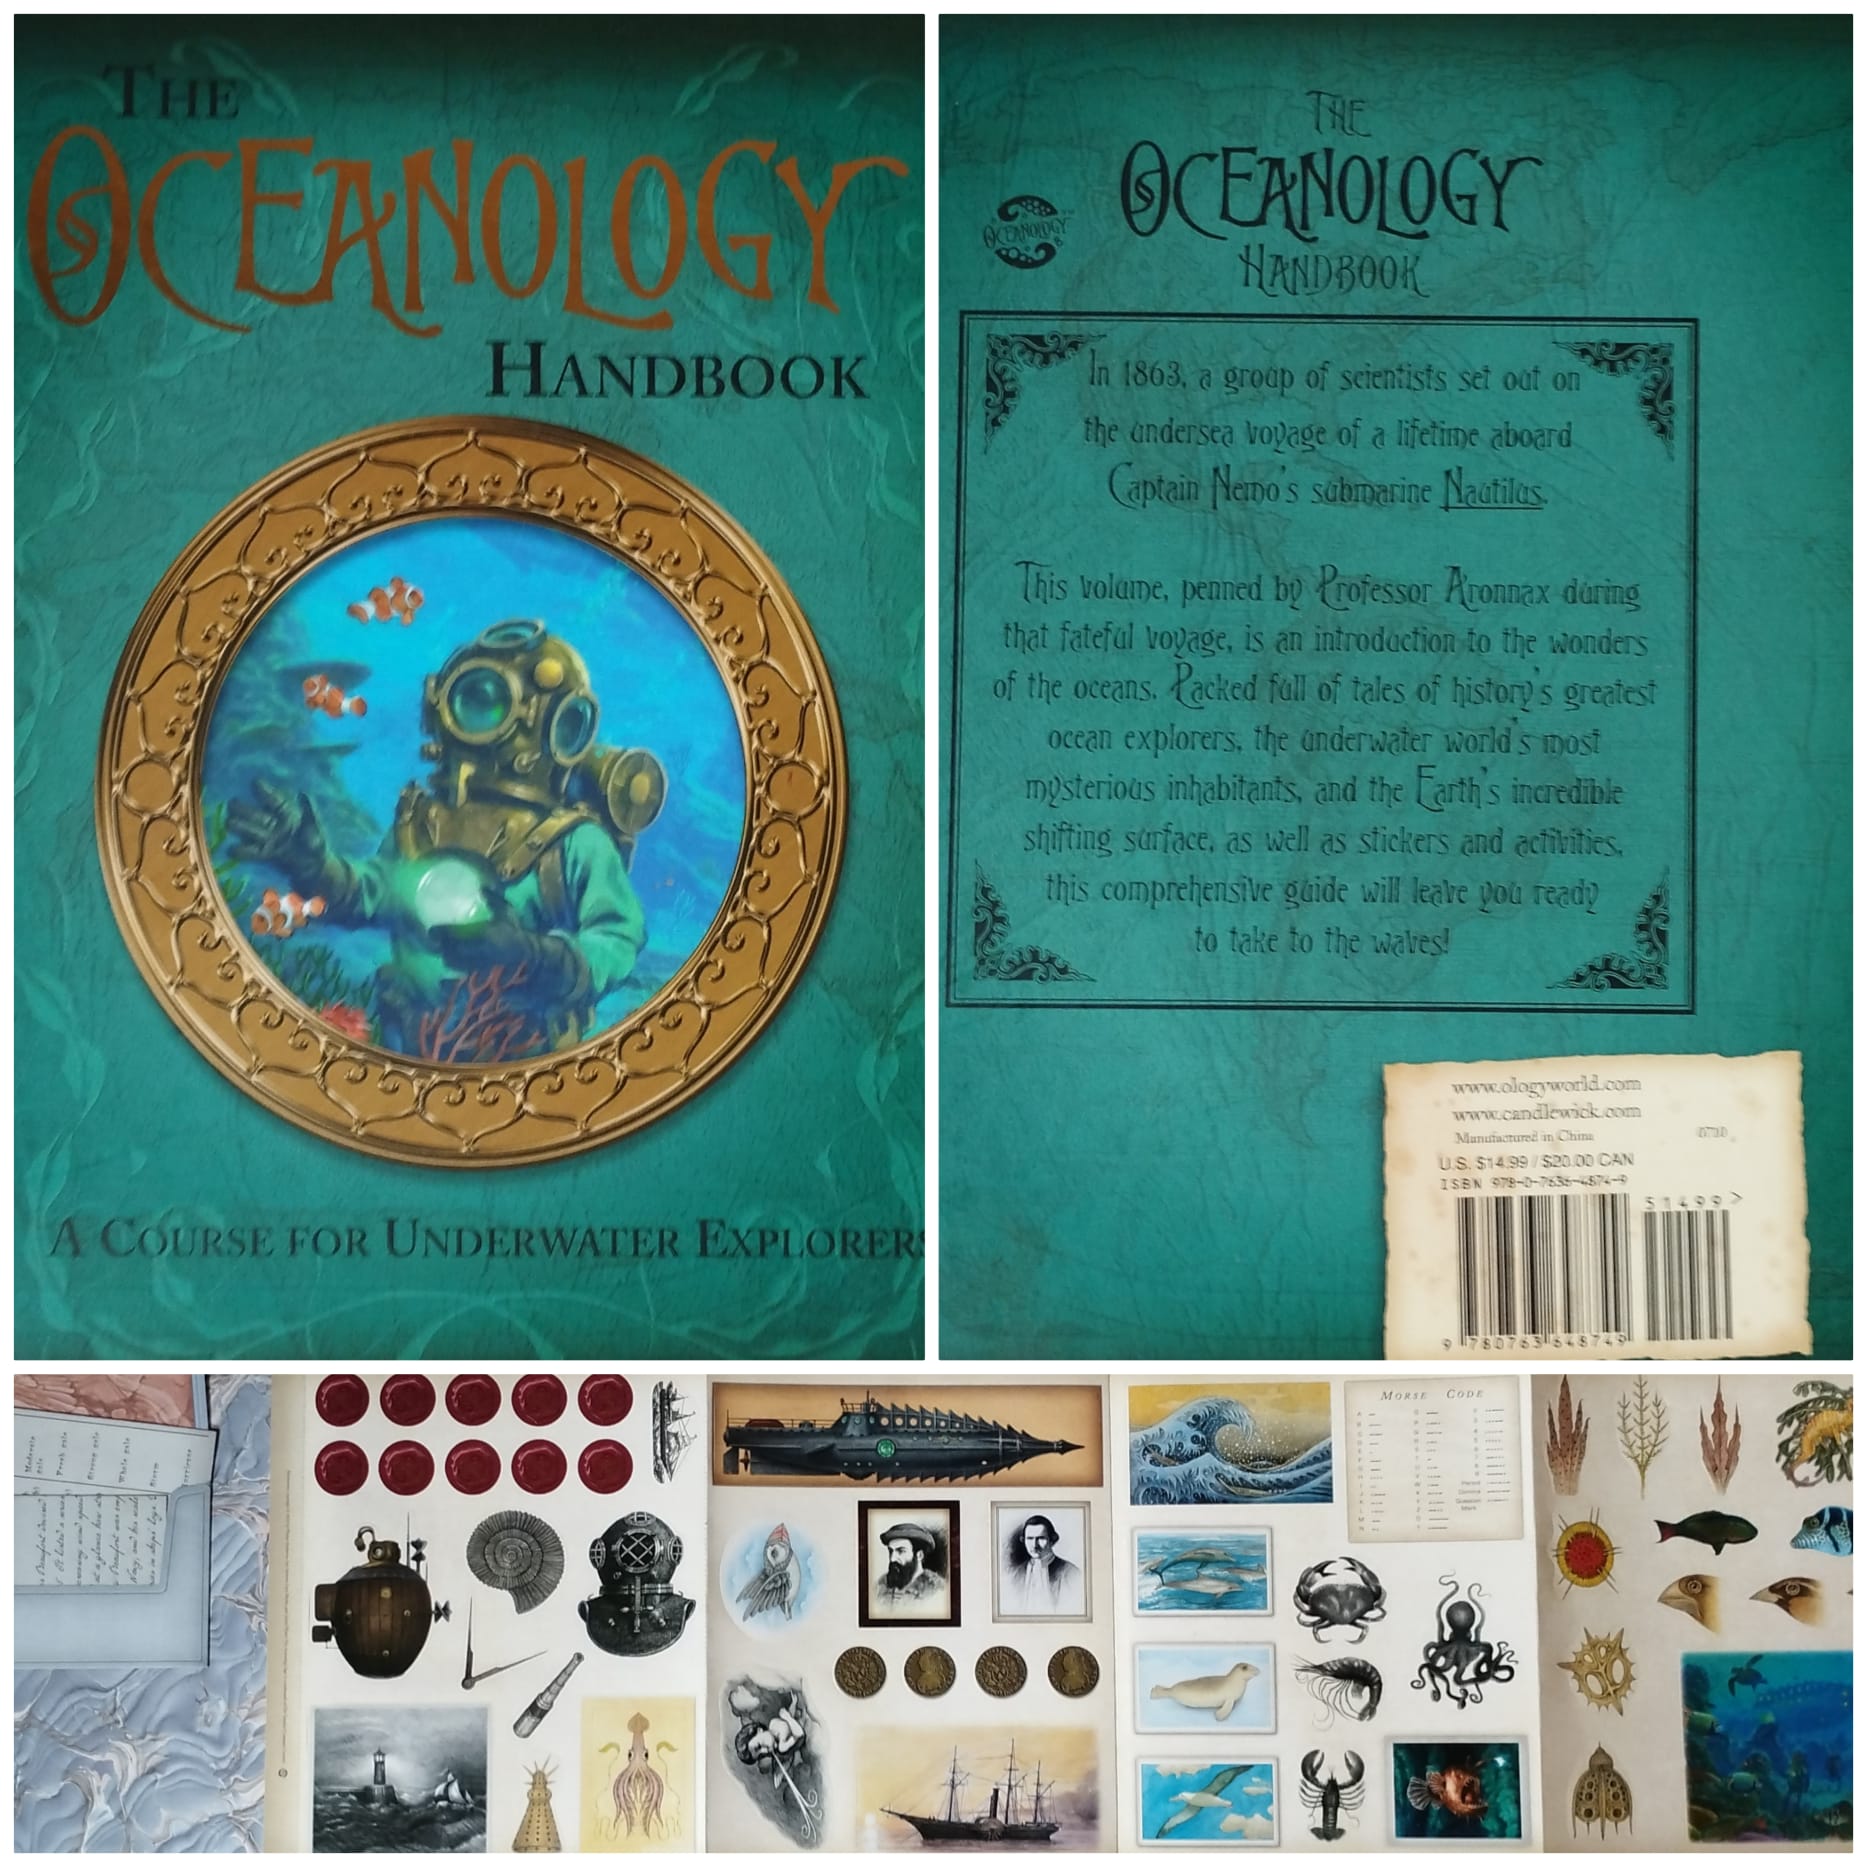 Oceanology handbook Candlewick Press